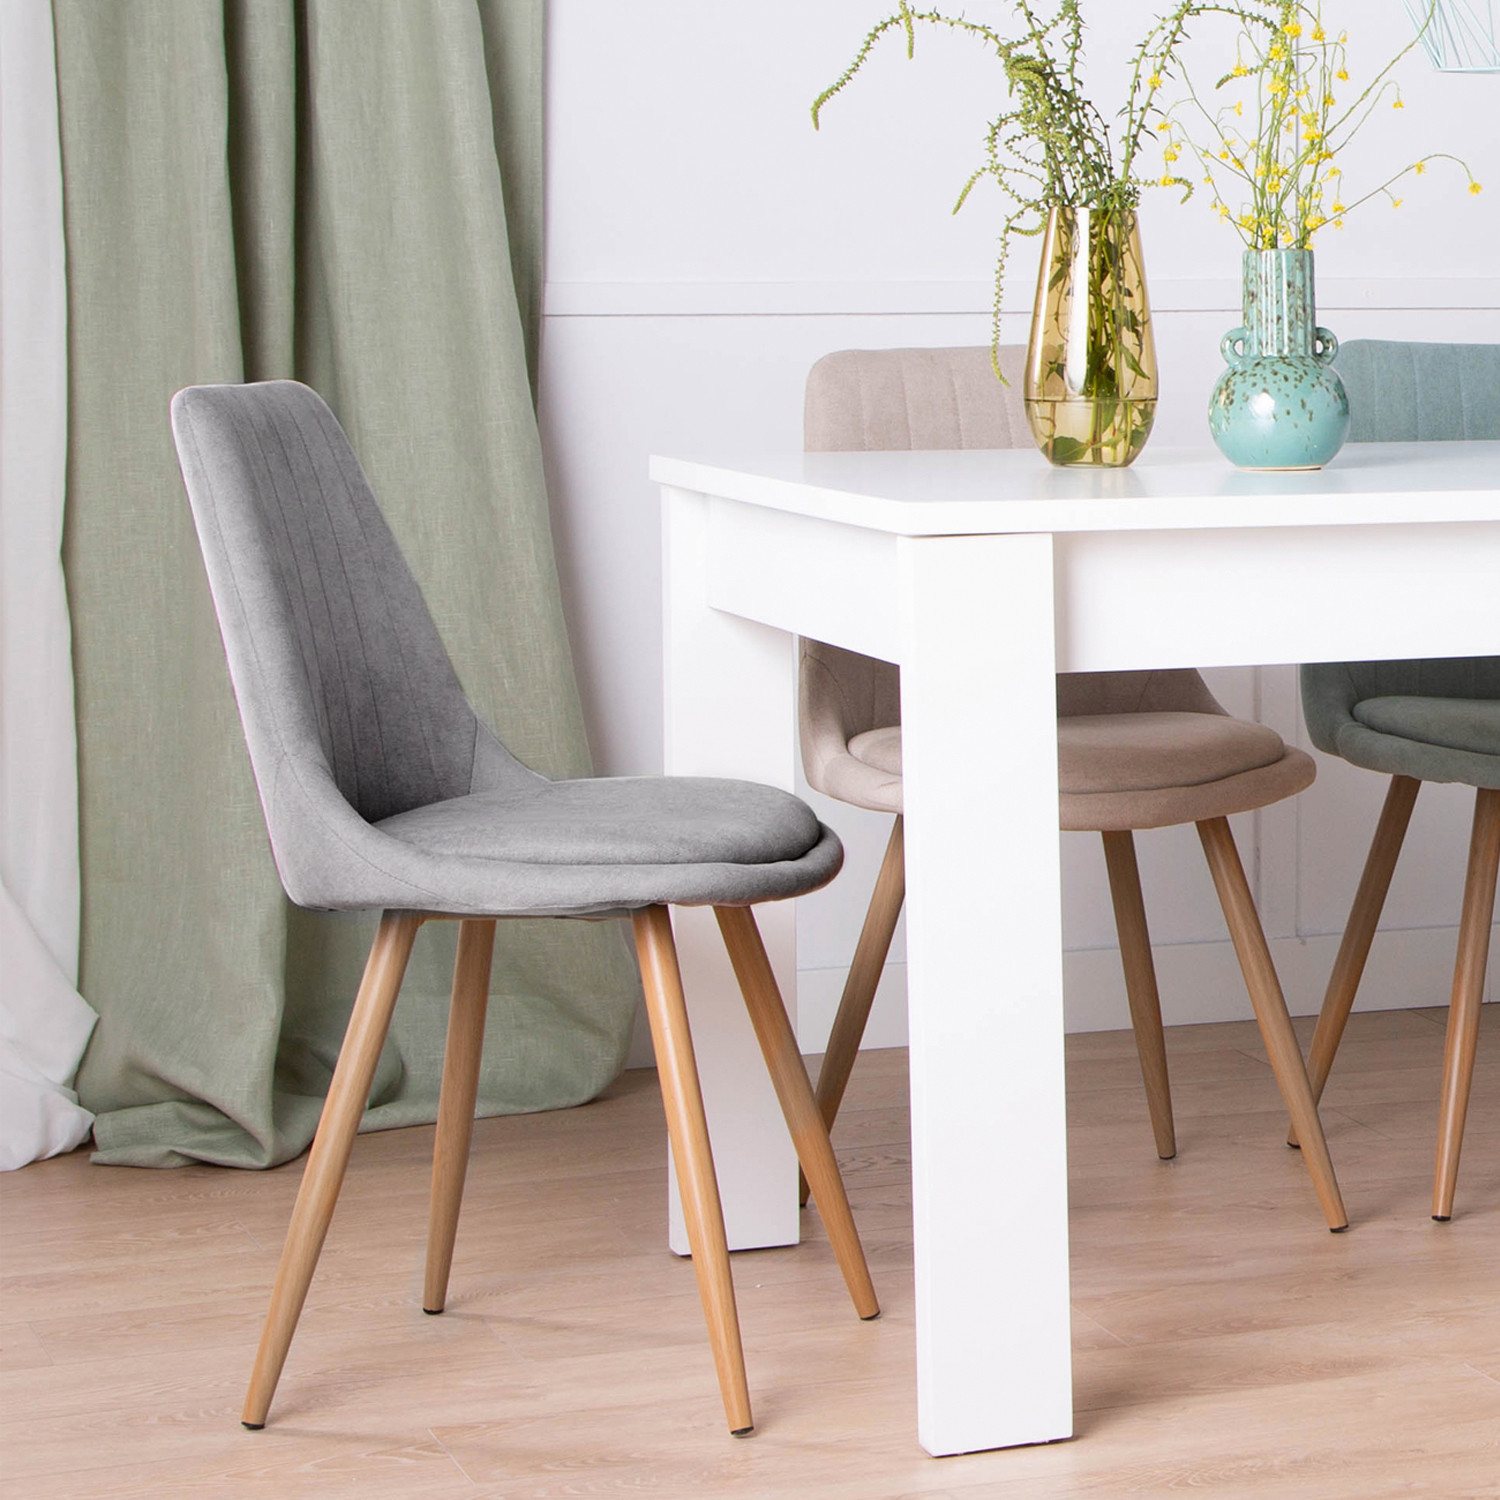 La silla de comedor tapizada Ingrid es una perfecta opción para tu salón o comedor. Con respaldo en poliéster efecto rayado y cojín inferior